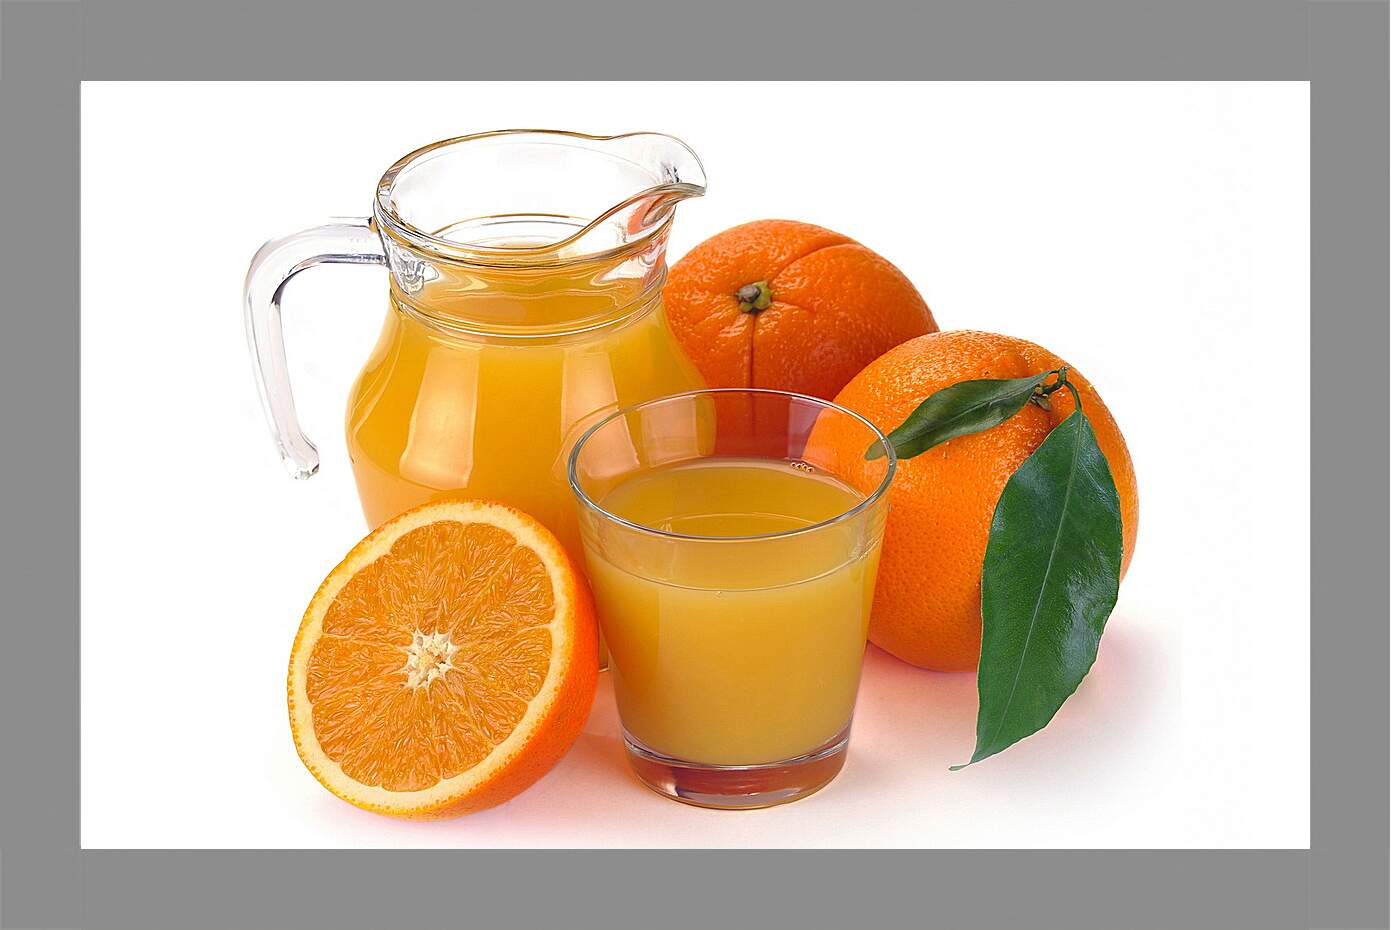 Картина в раме - Кувшин и стакан апельсинового сока